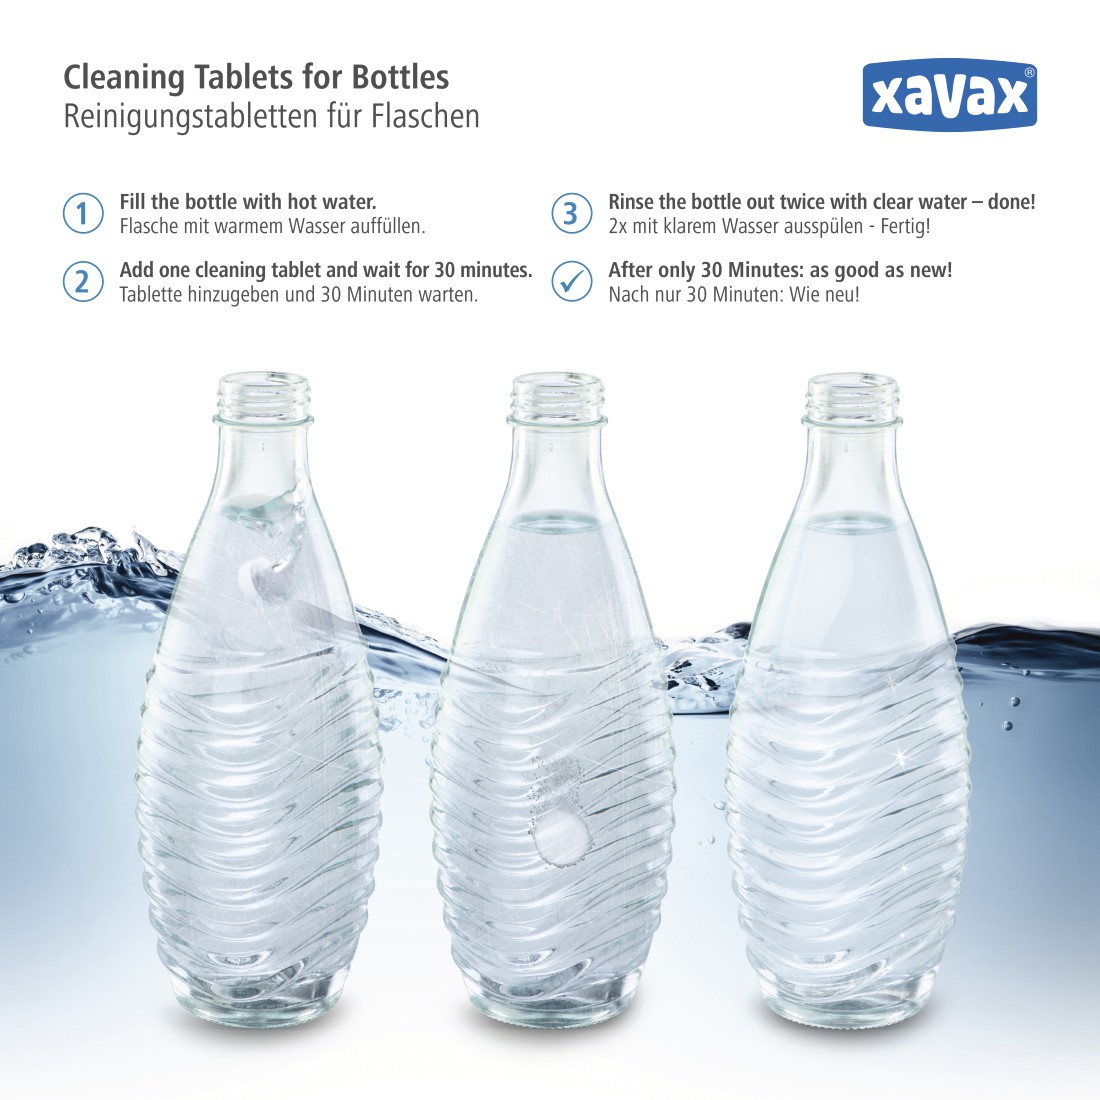 awx4 Druckfähige Anwendung 4 - Xavax, Reinigungstabletten für Flaschen, 30 Packungen im Display